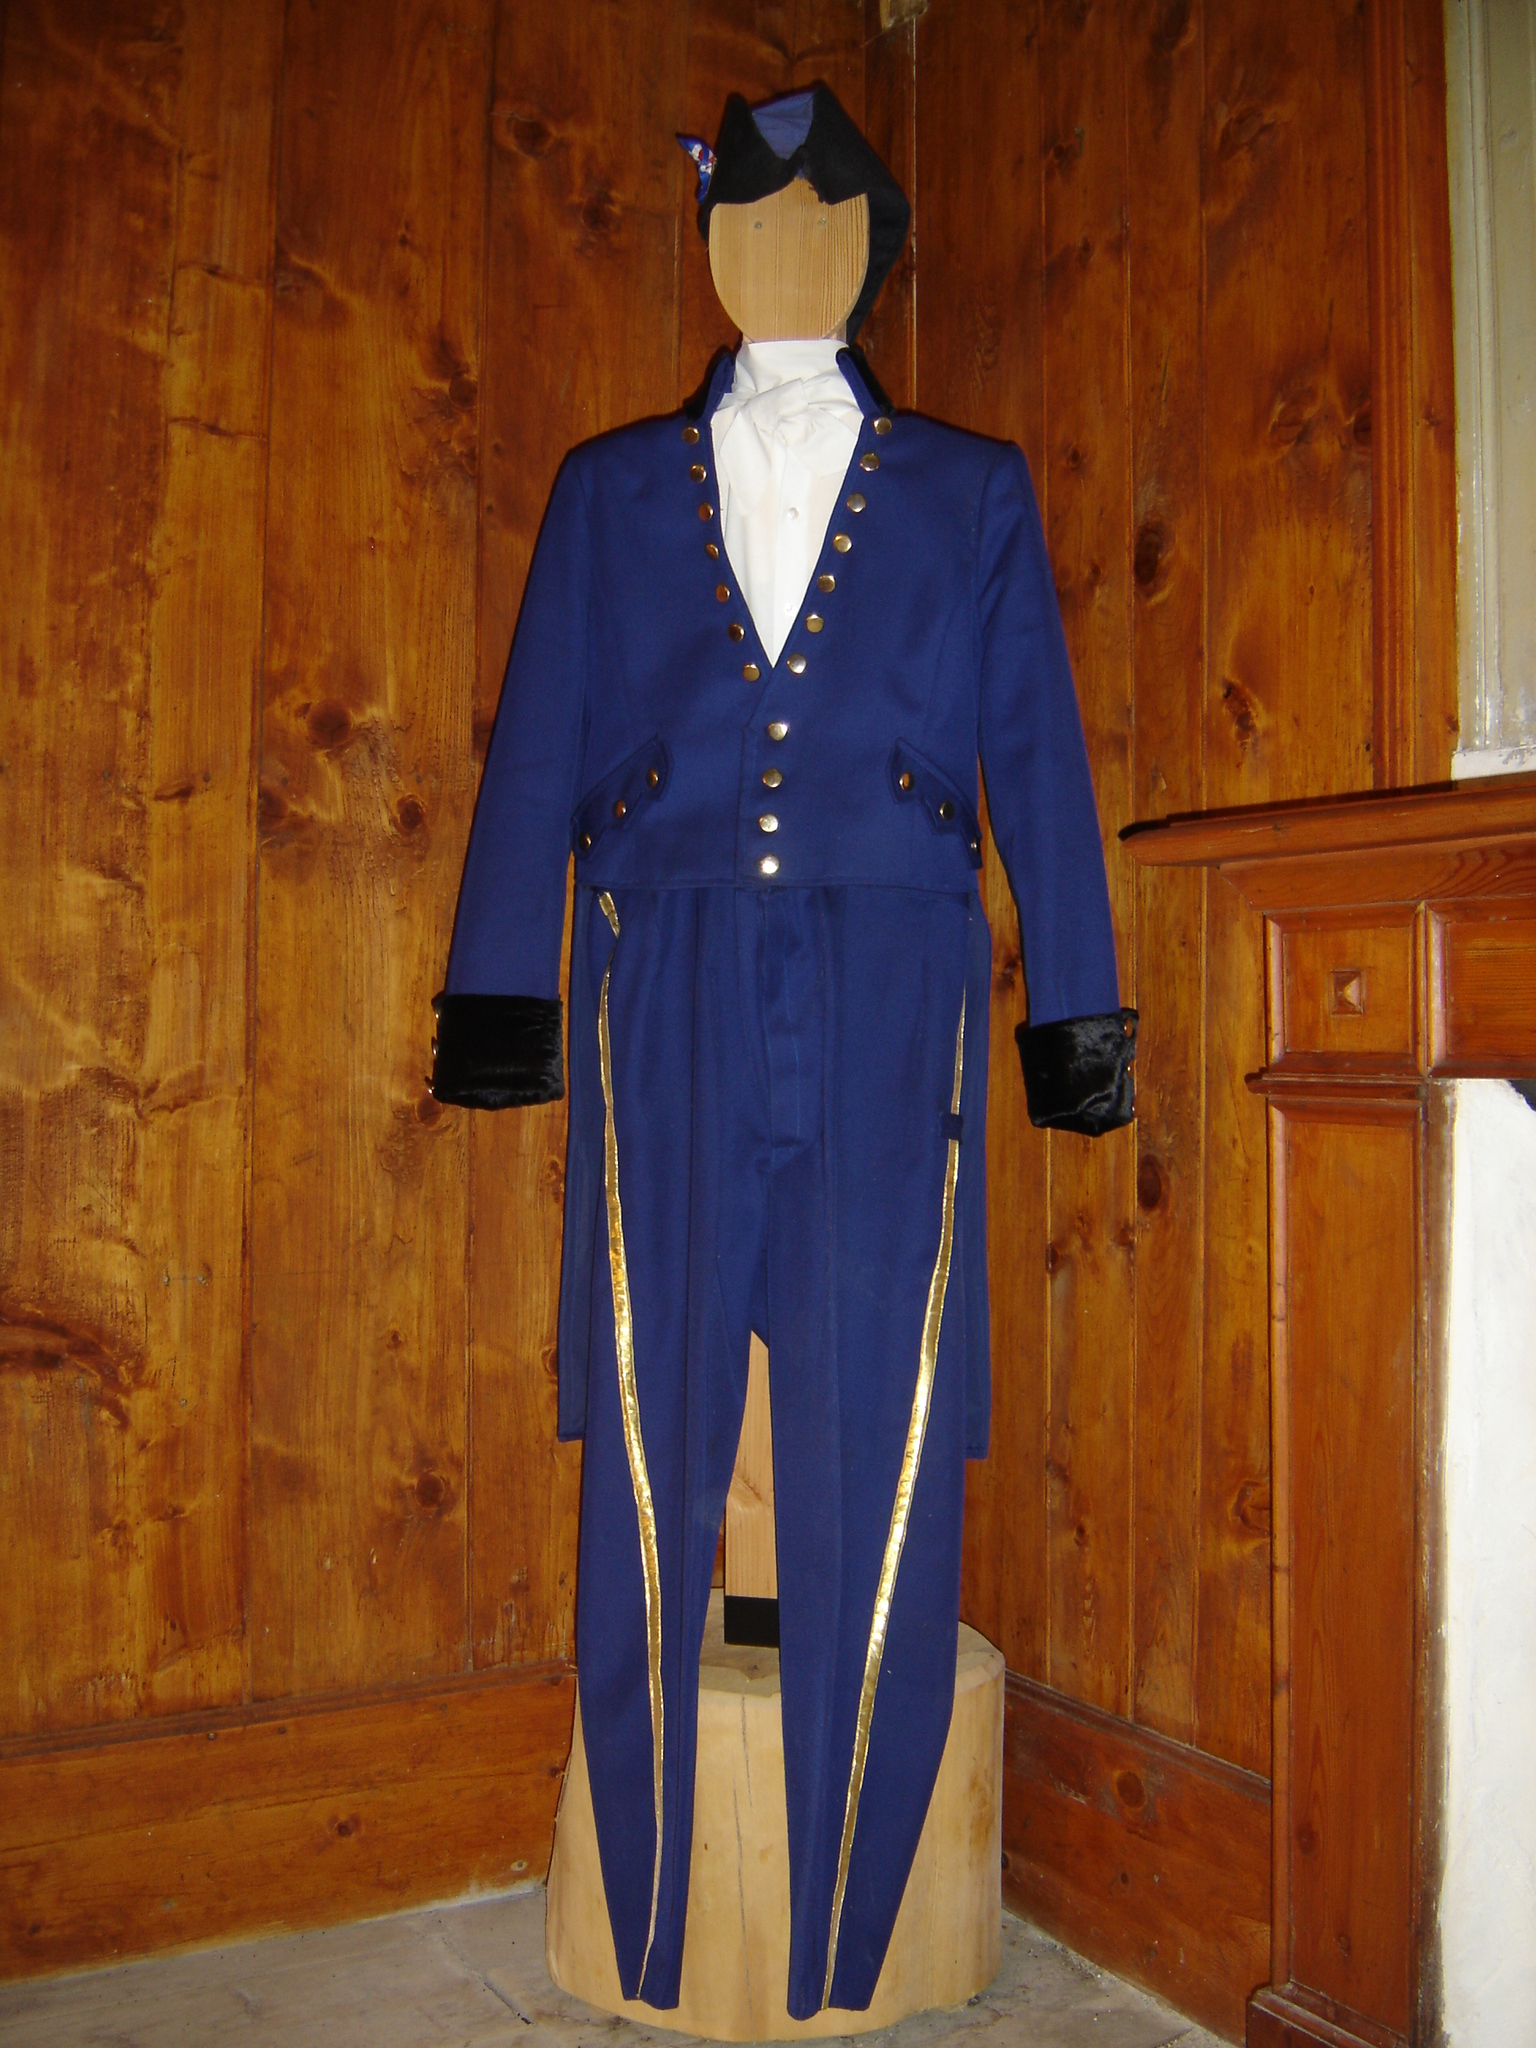 uniforme de l'élève ingénieur (copie)